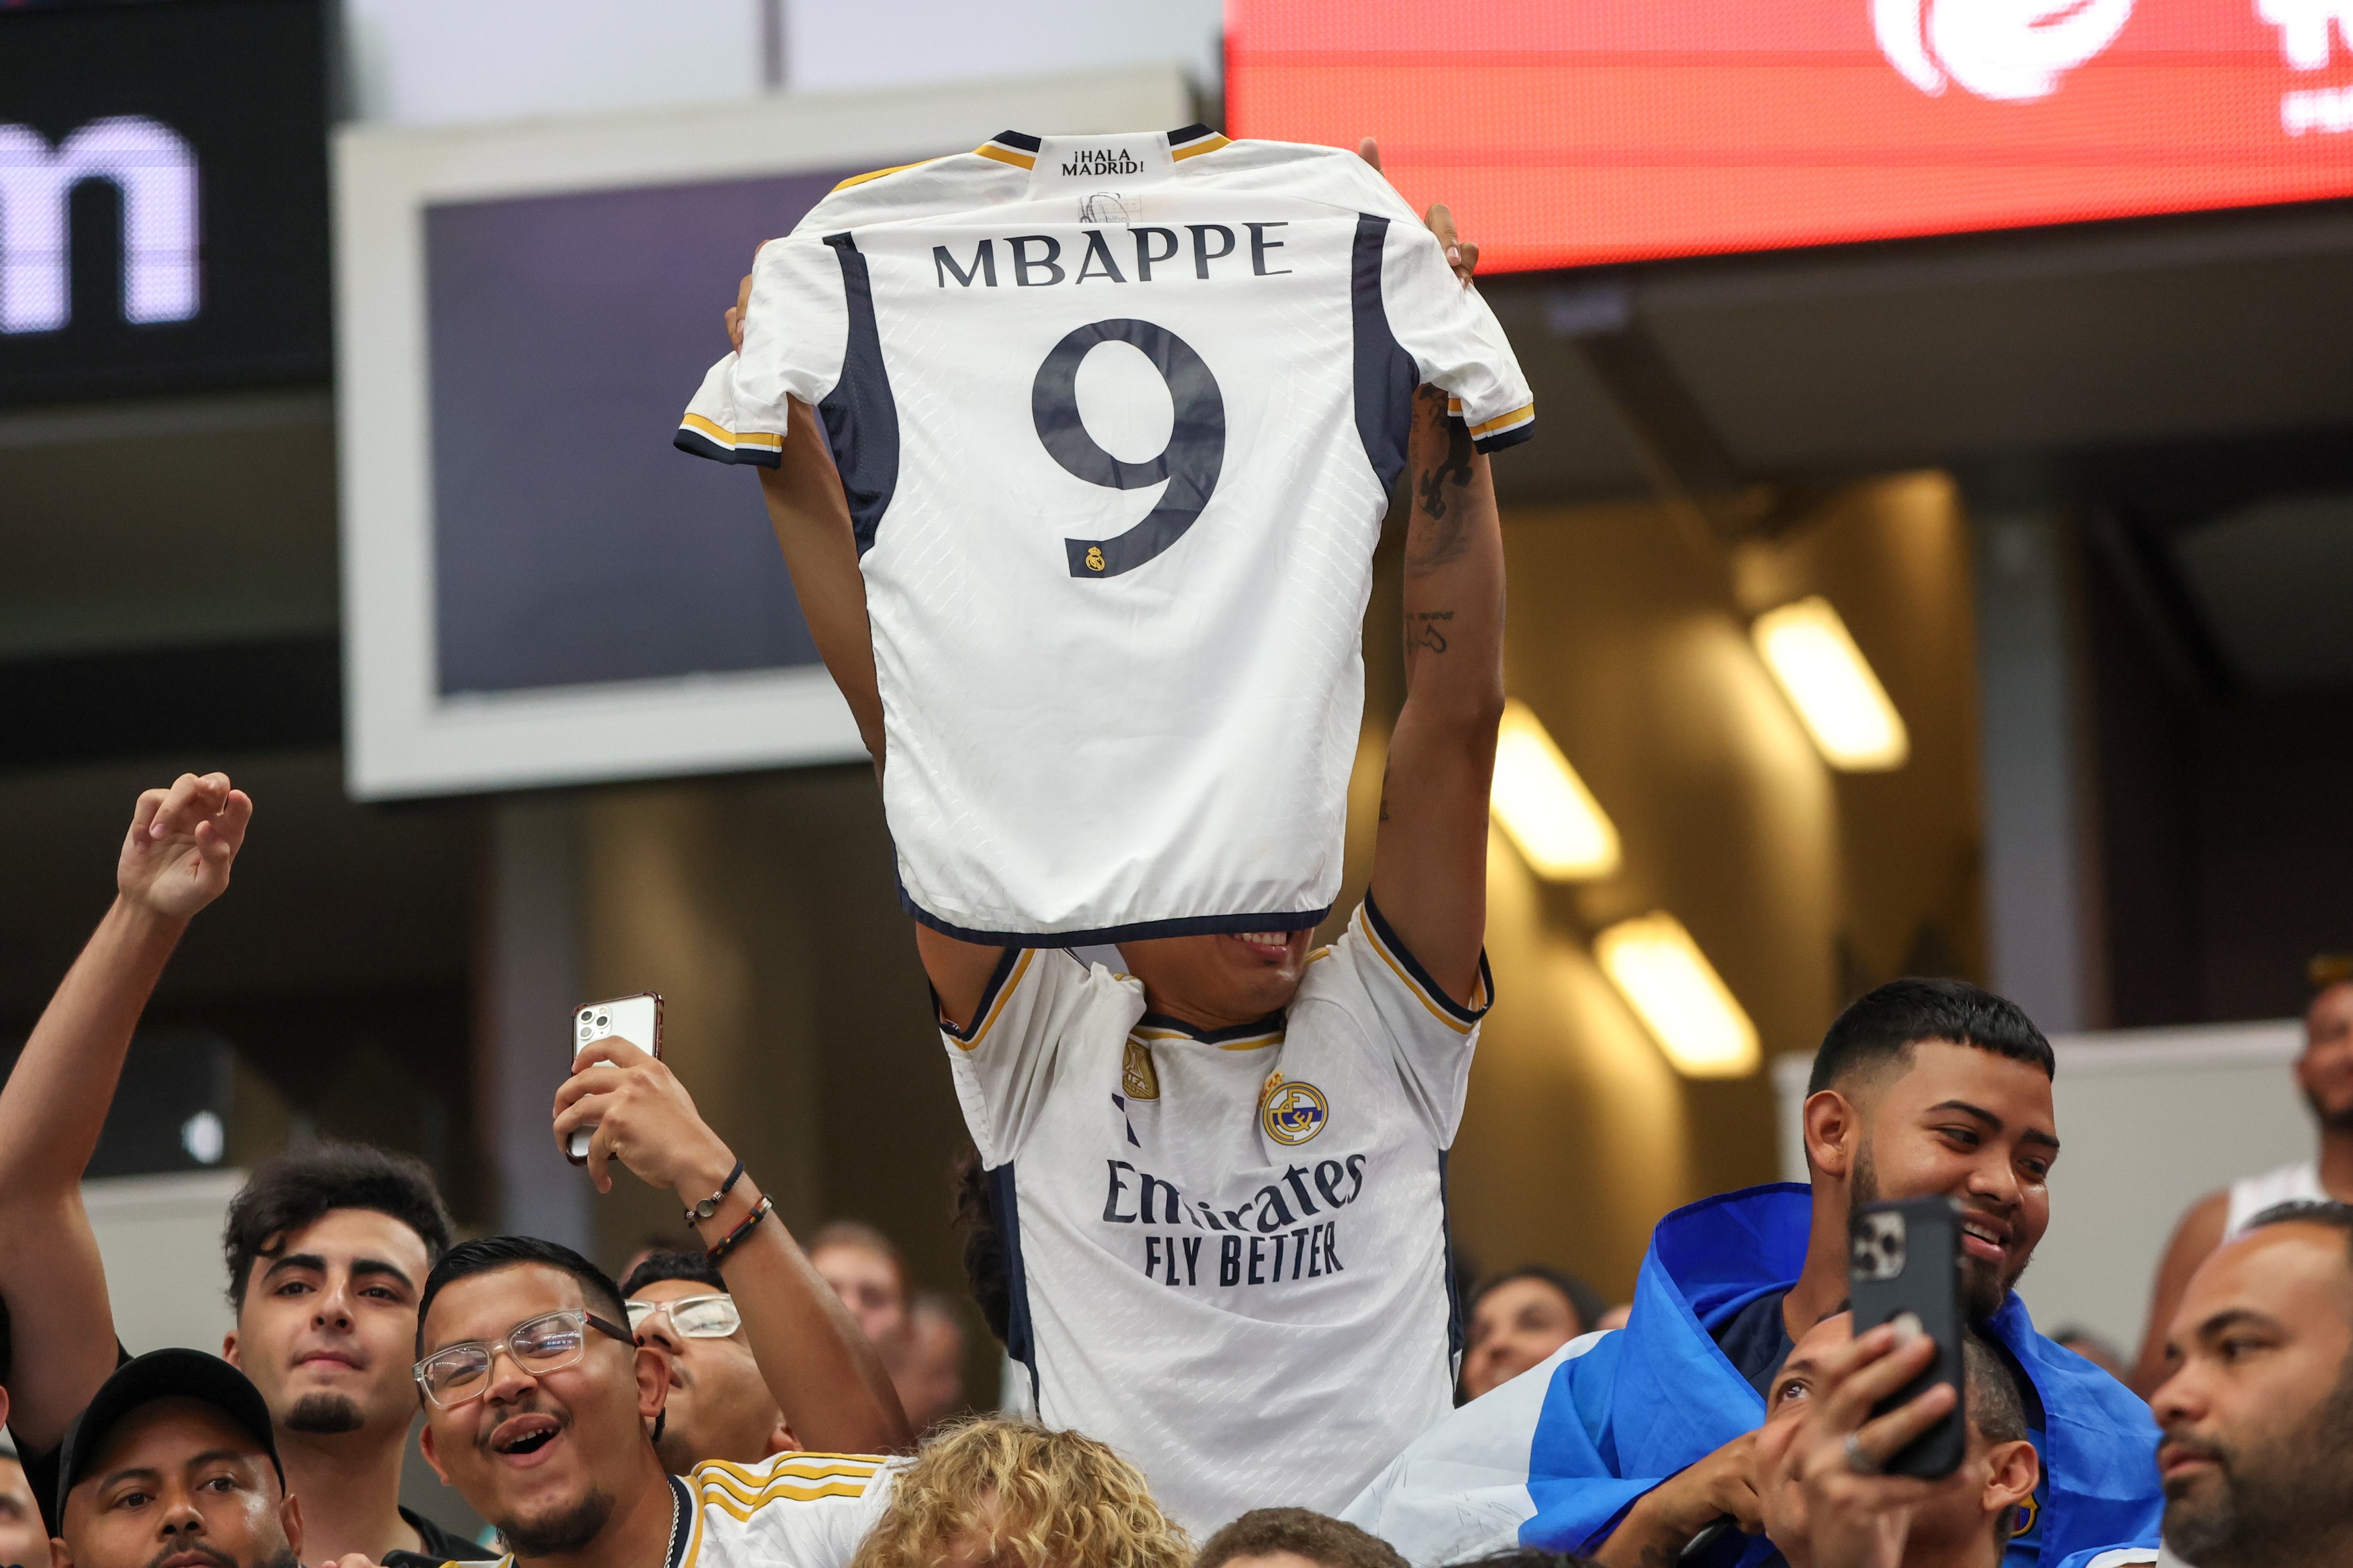 Lovitură pentru Real Madrid! Ce sumă a încasat campioana Spaniei din vânzarea tricourilor cu Mbappe